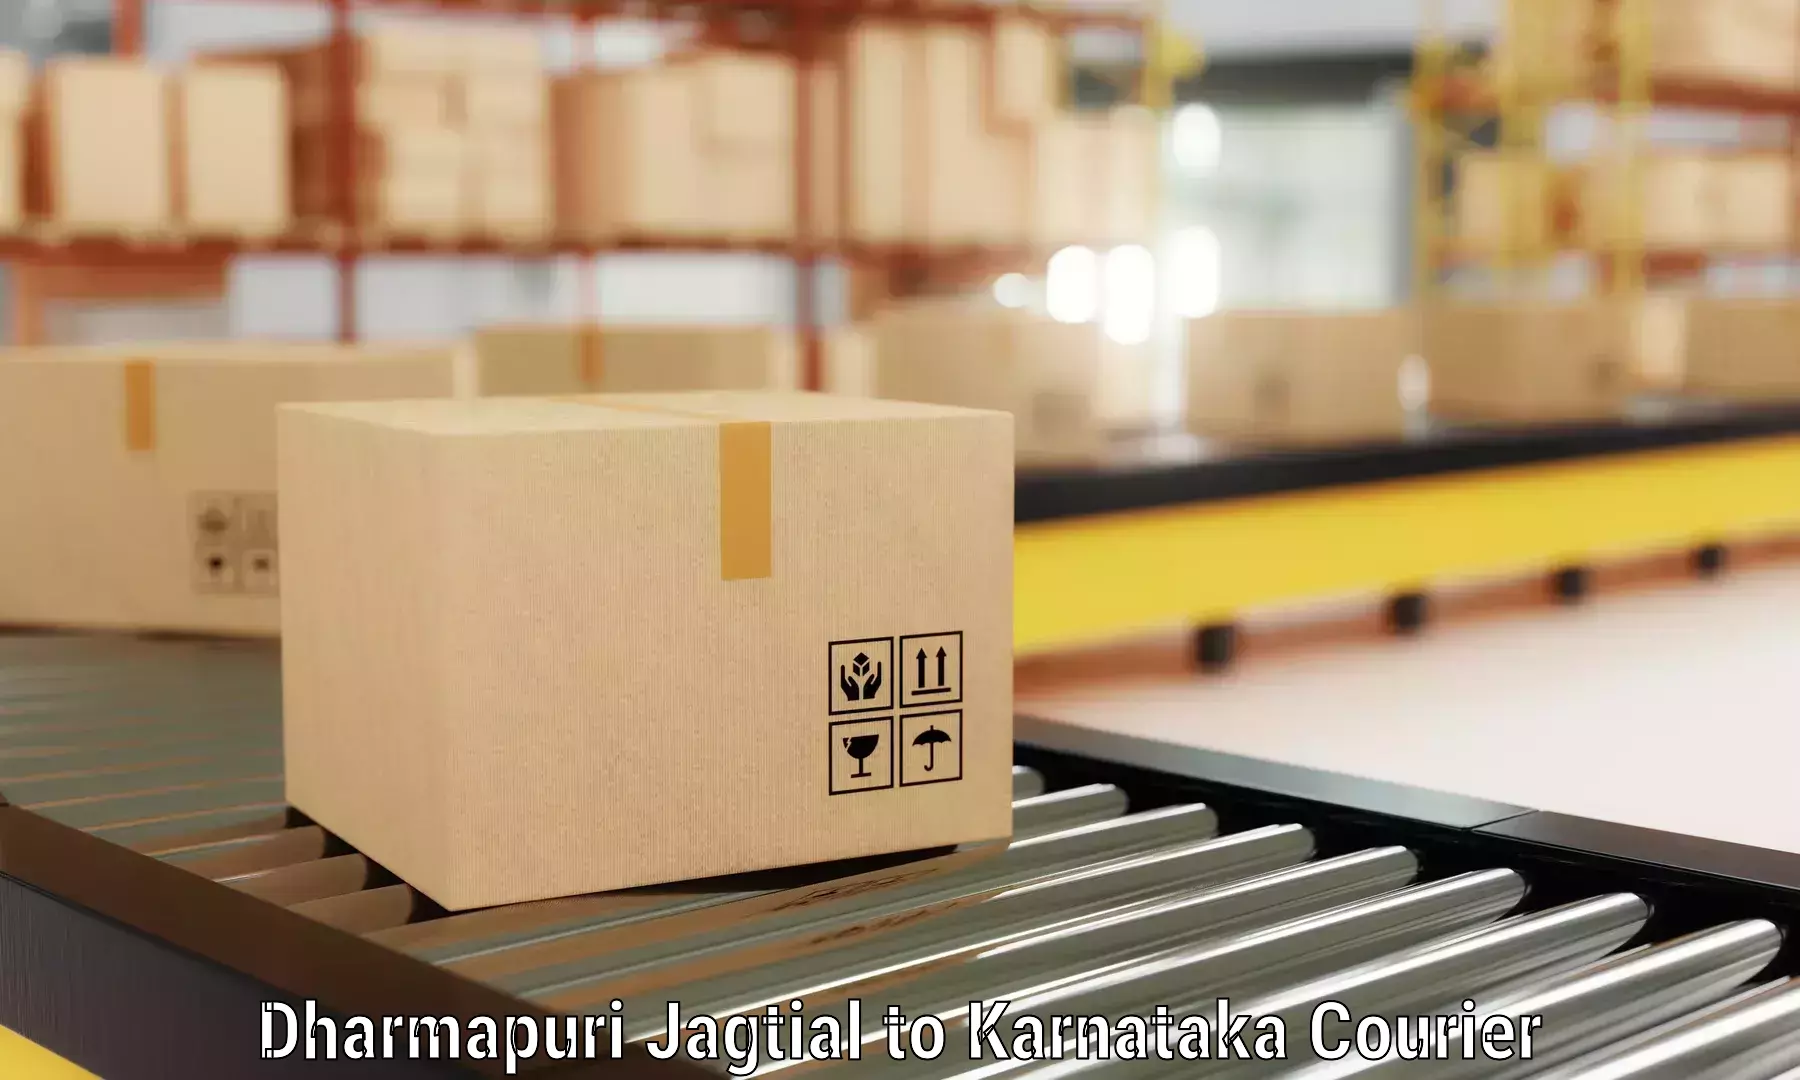 Furniture moving assistance Dharmapuri Jagtial to Navalgund